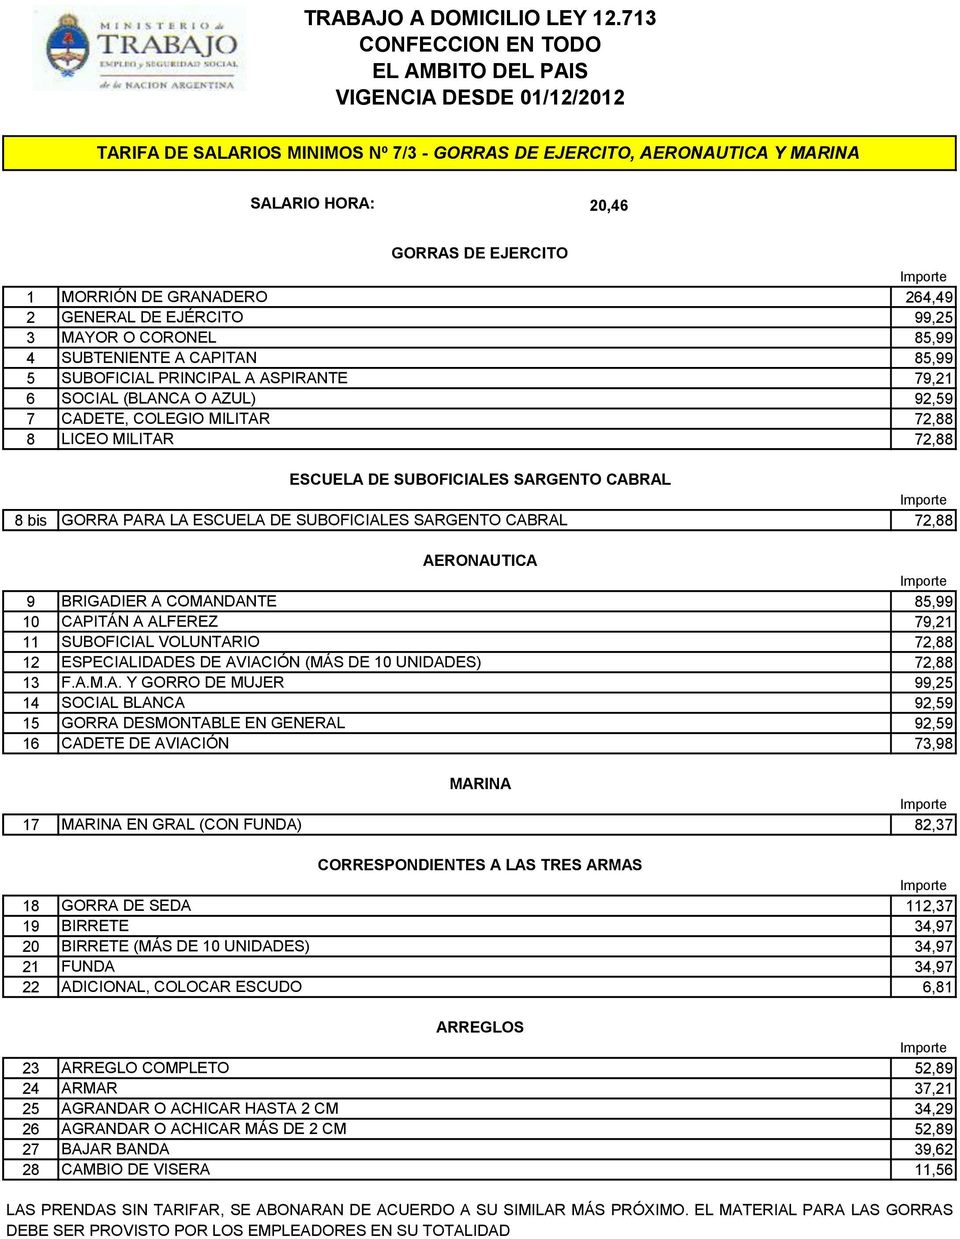 GORRA PARA LA ESCUELA DE SUBOFICIALES SARGENTO CABRAL 72,88 AERONAUTICA 9 BRIGADIER A COMANDANTE 85,99 10 CAPITÁN A ALFEREZ 79,21 11 SUBOFICIAL VOLUNTARIO 72,88 12 ESPECIALIDADES DE AVIACIÓN (MÁS DE